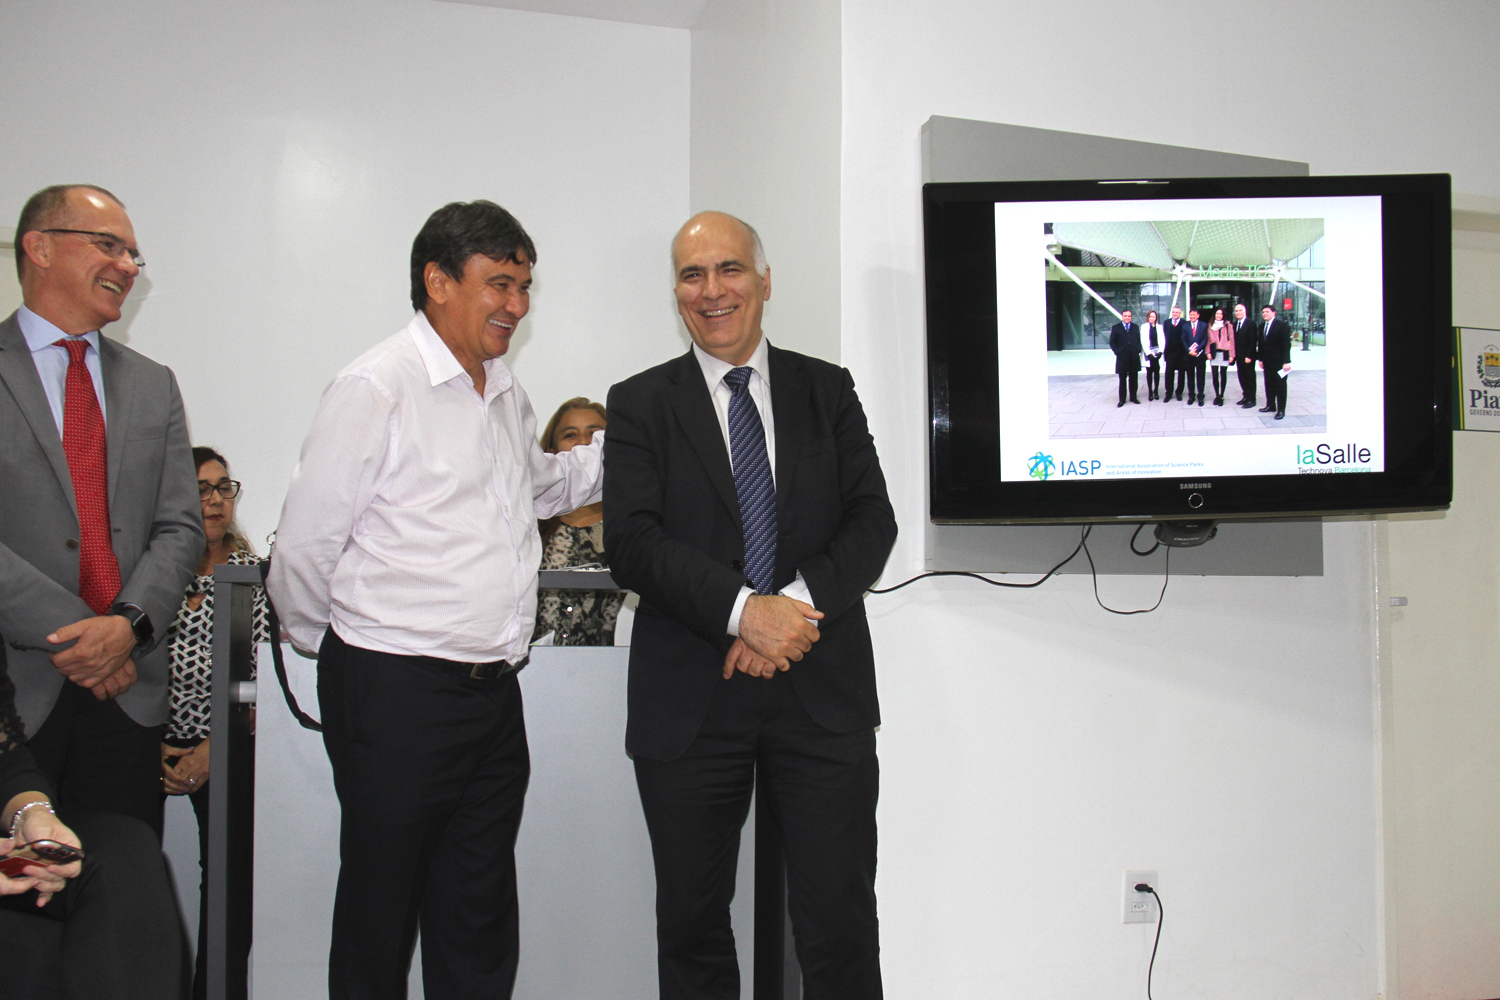 Wellington Dias e equipe de governo se reuniram com o presidente da Associação Internacional de Parques de Ciência e Áreas de Inovação (Iasp), o espanhol Josep Piqué.